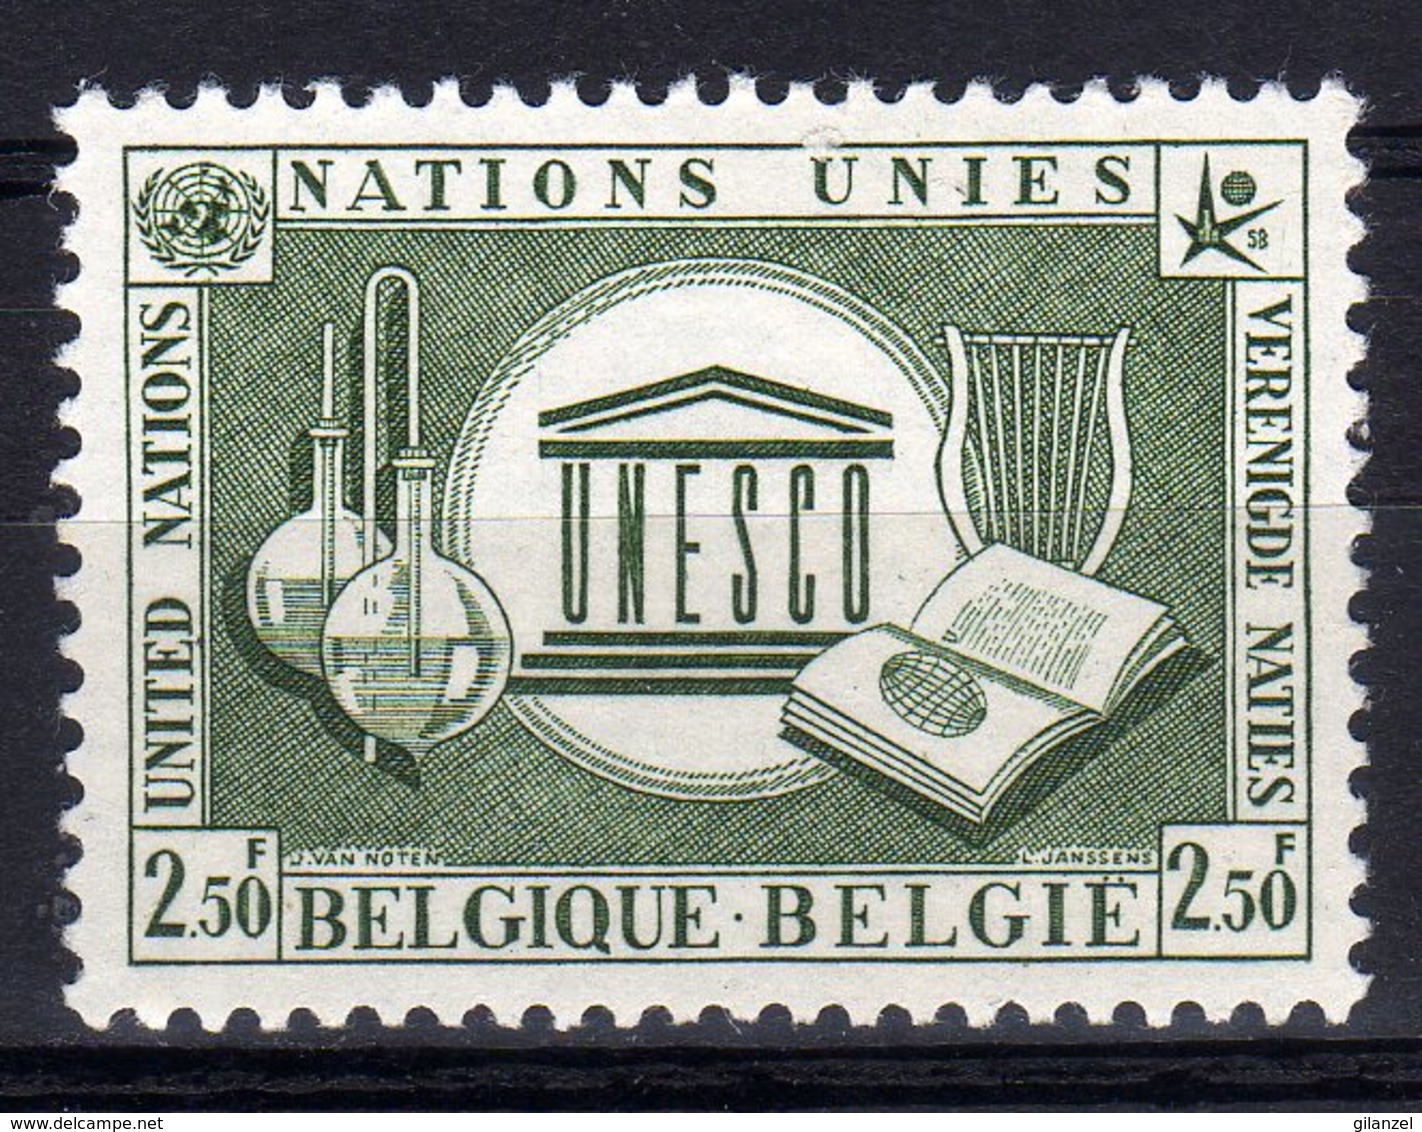 Belgie Belgique 1958 Nations Unies United Nations Verenigde Naties UNESCO - UNESCO